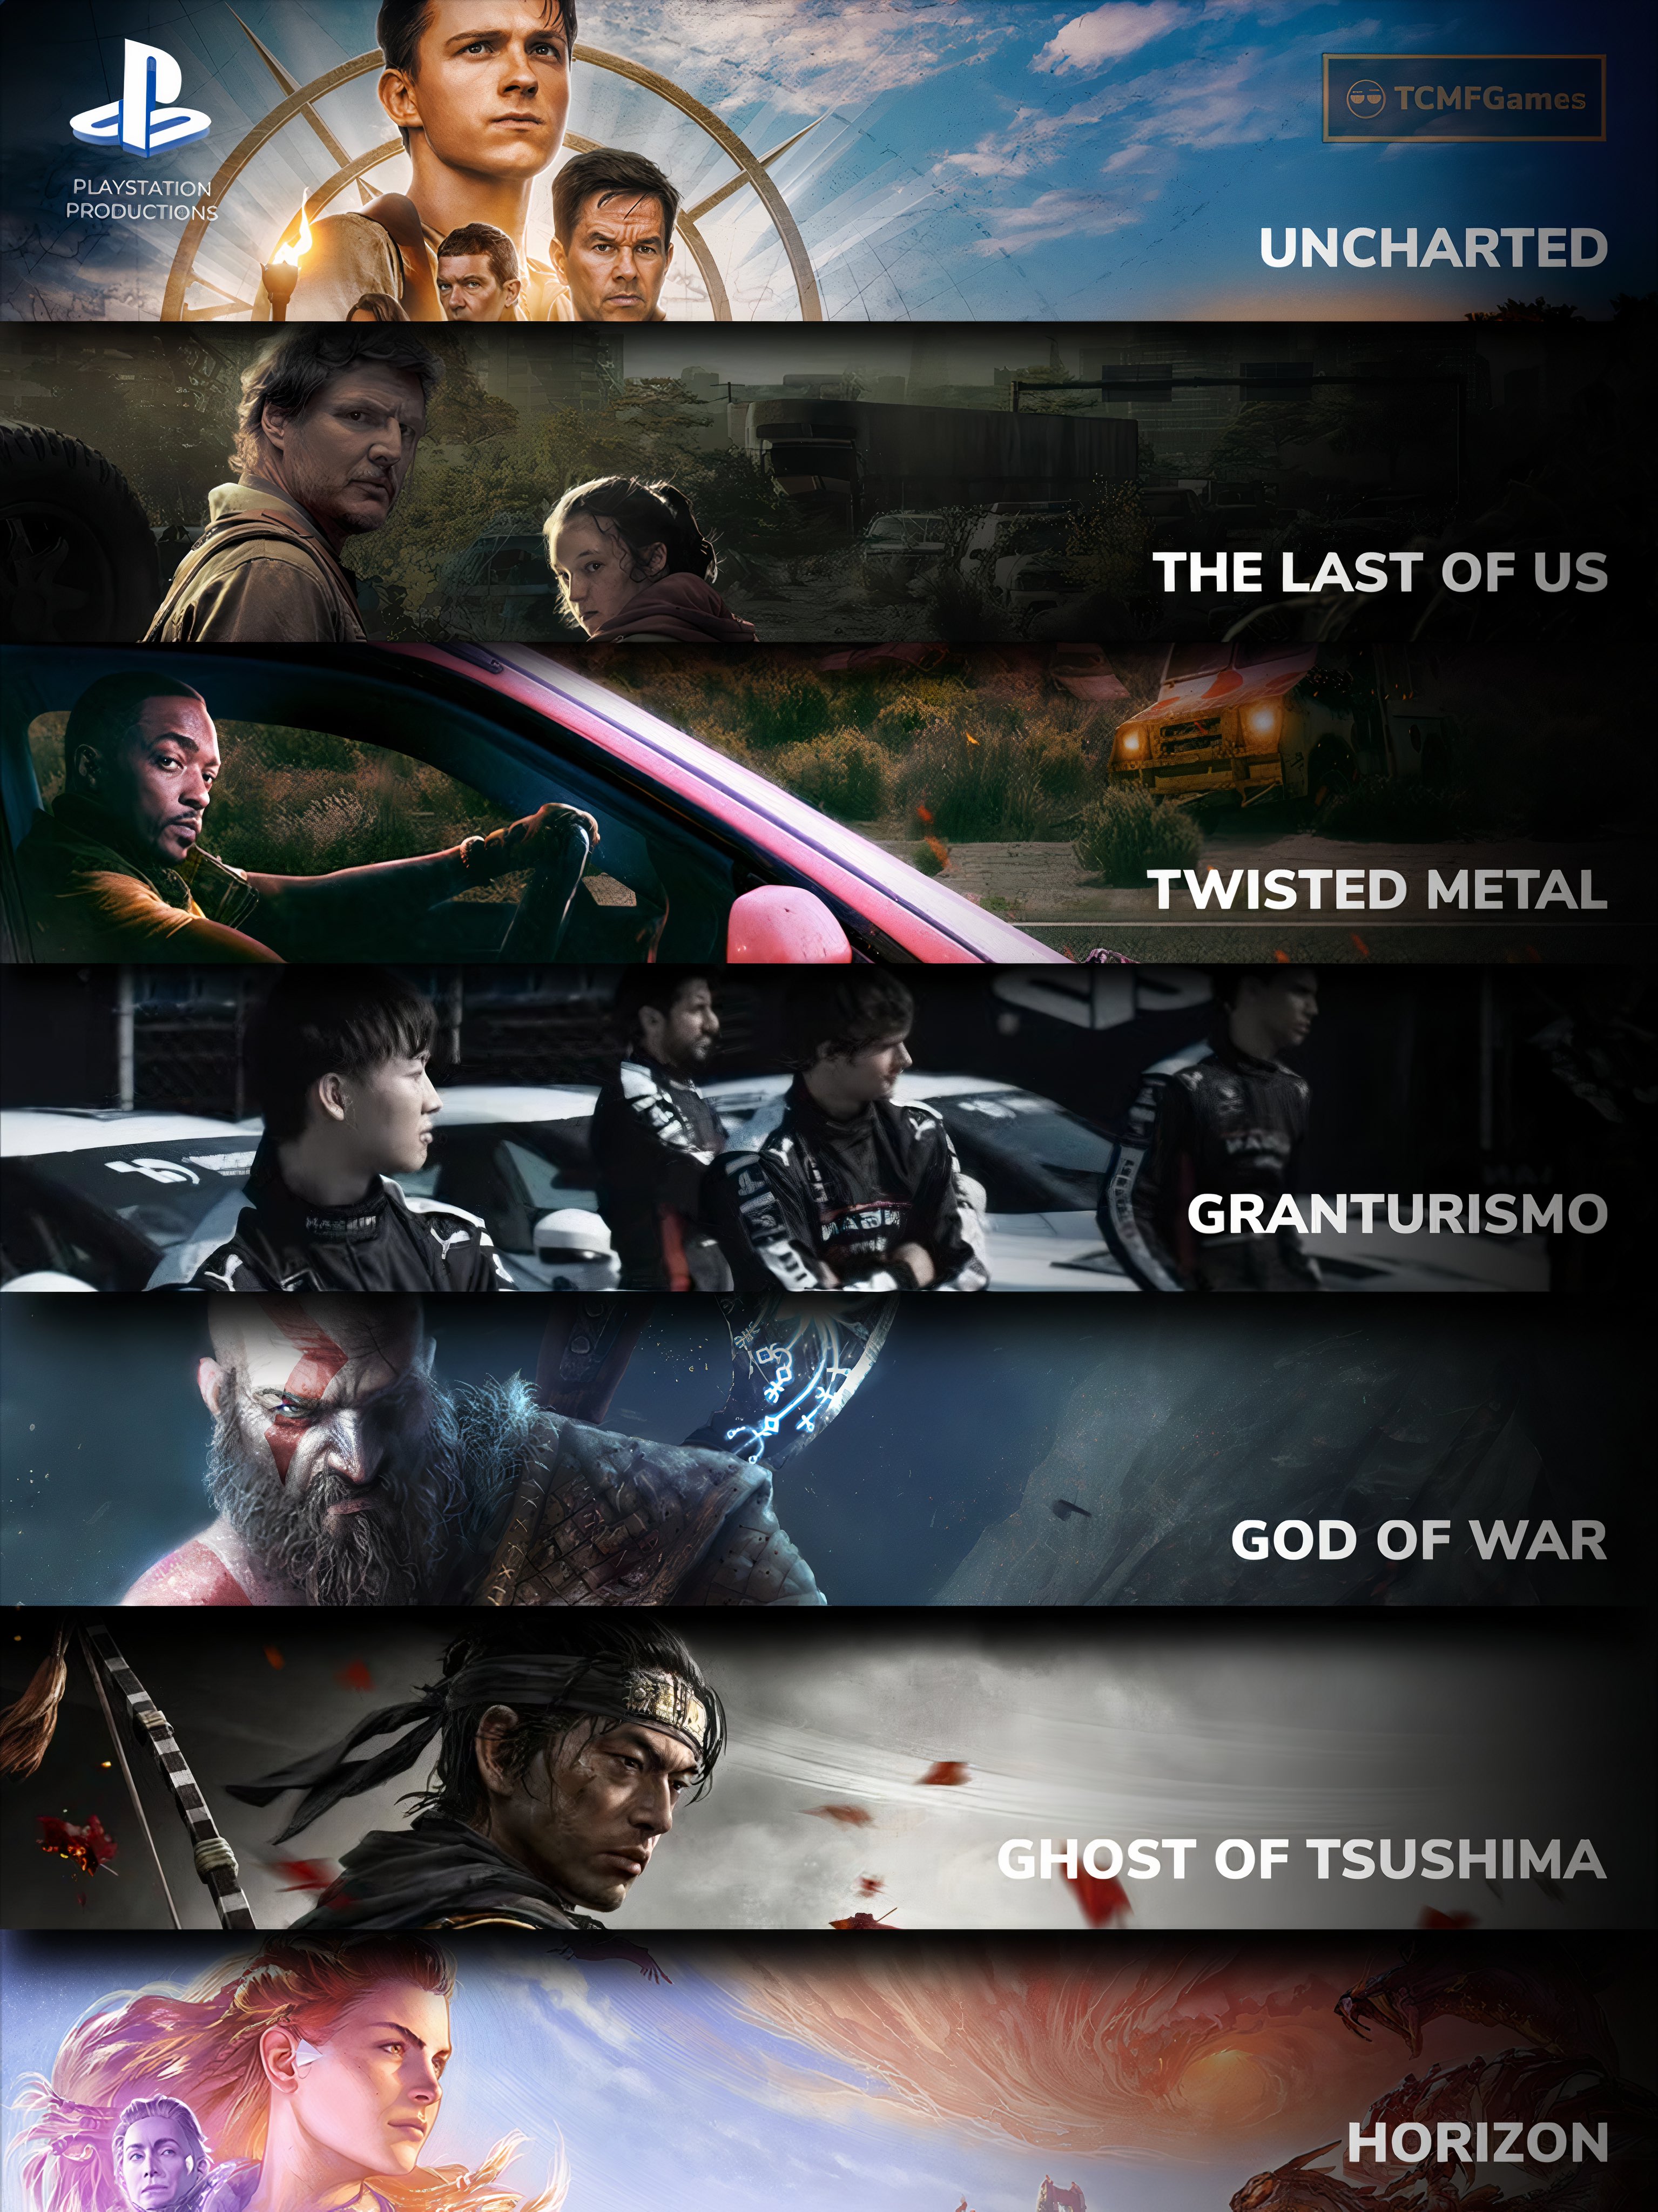 Twisted Metal trailer looks like the anti-Last of Us - Polygon